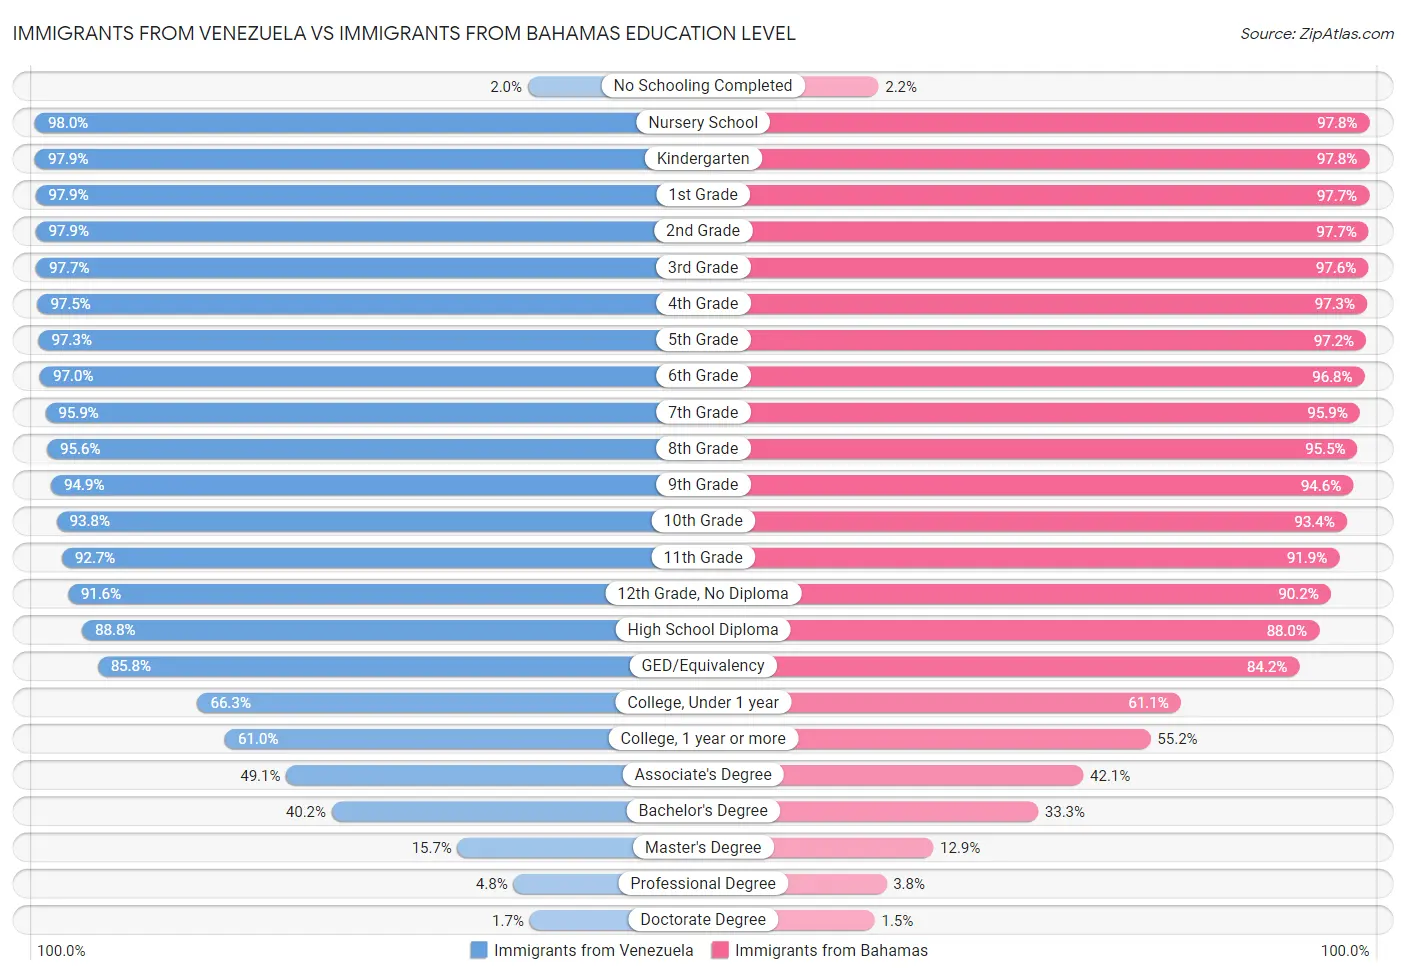 Immigrants from Venezuela vs Immigrants from Bahamas Education Level